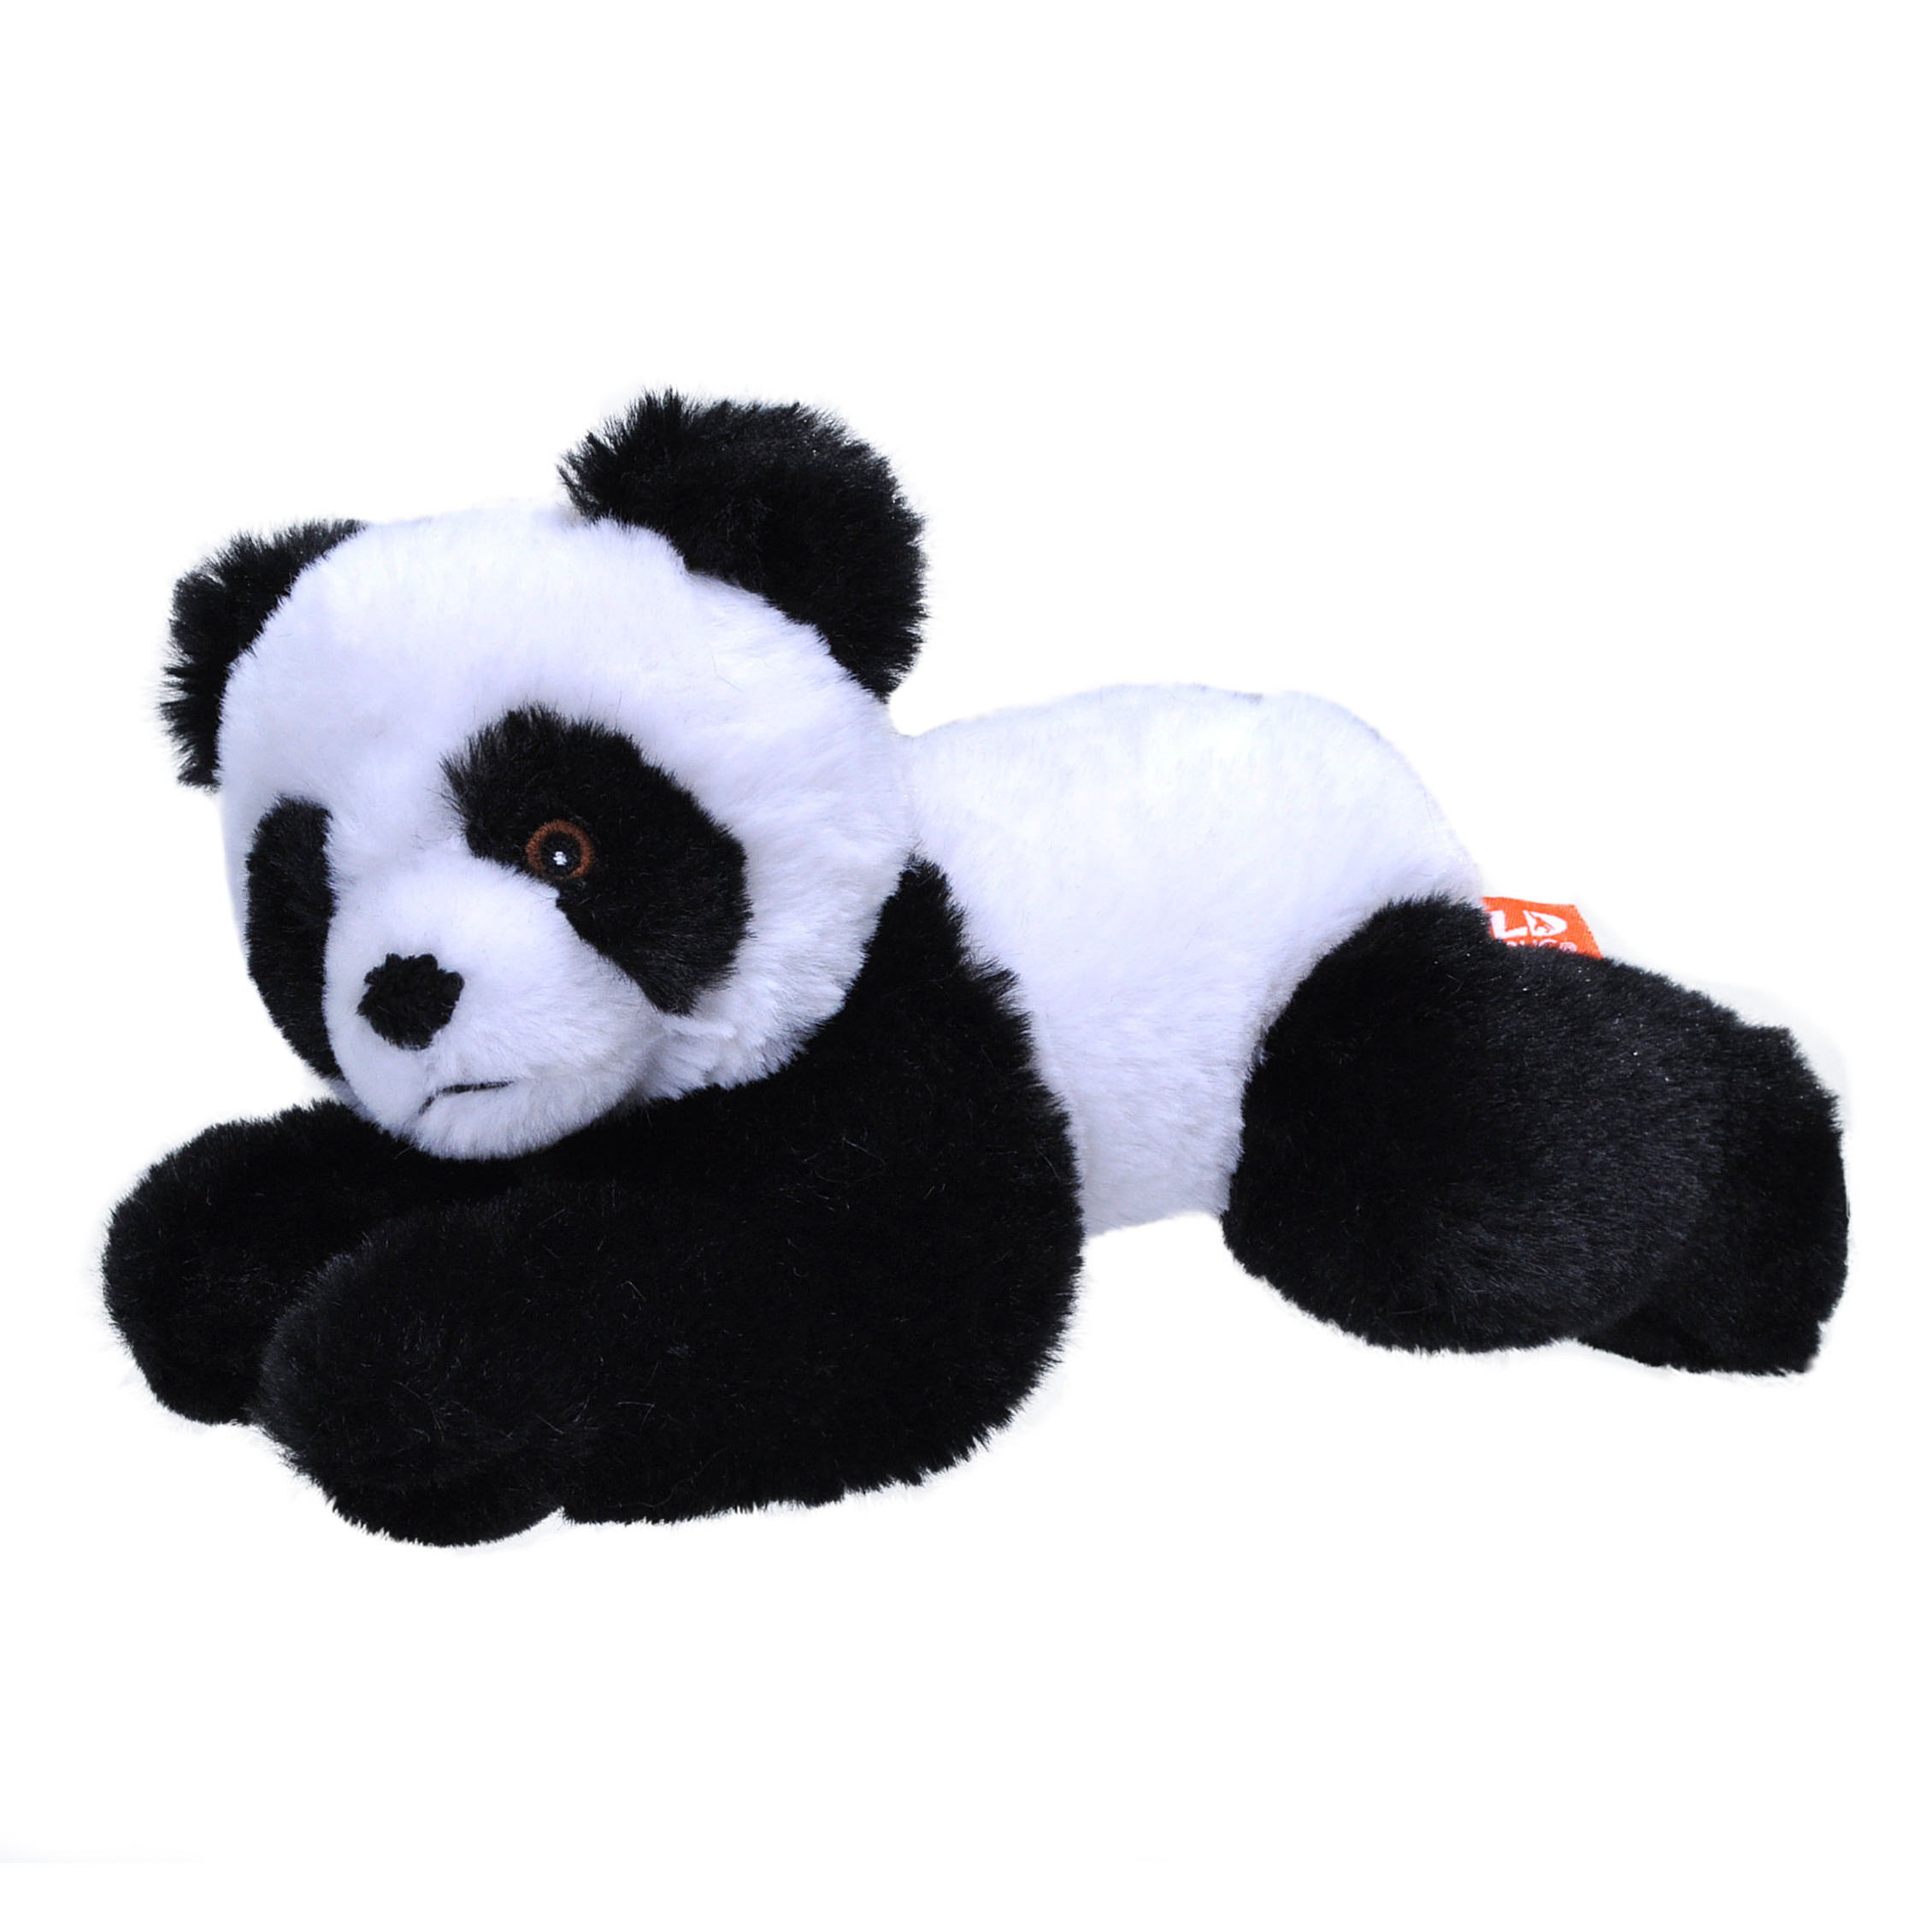 Pluche knuffel dieren Eco-kins panda beer van 24 cm